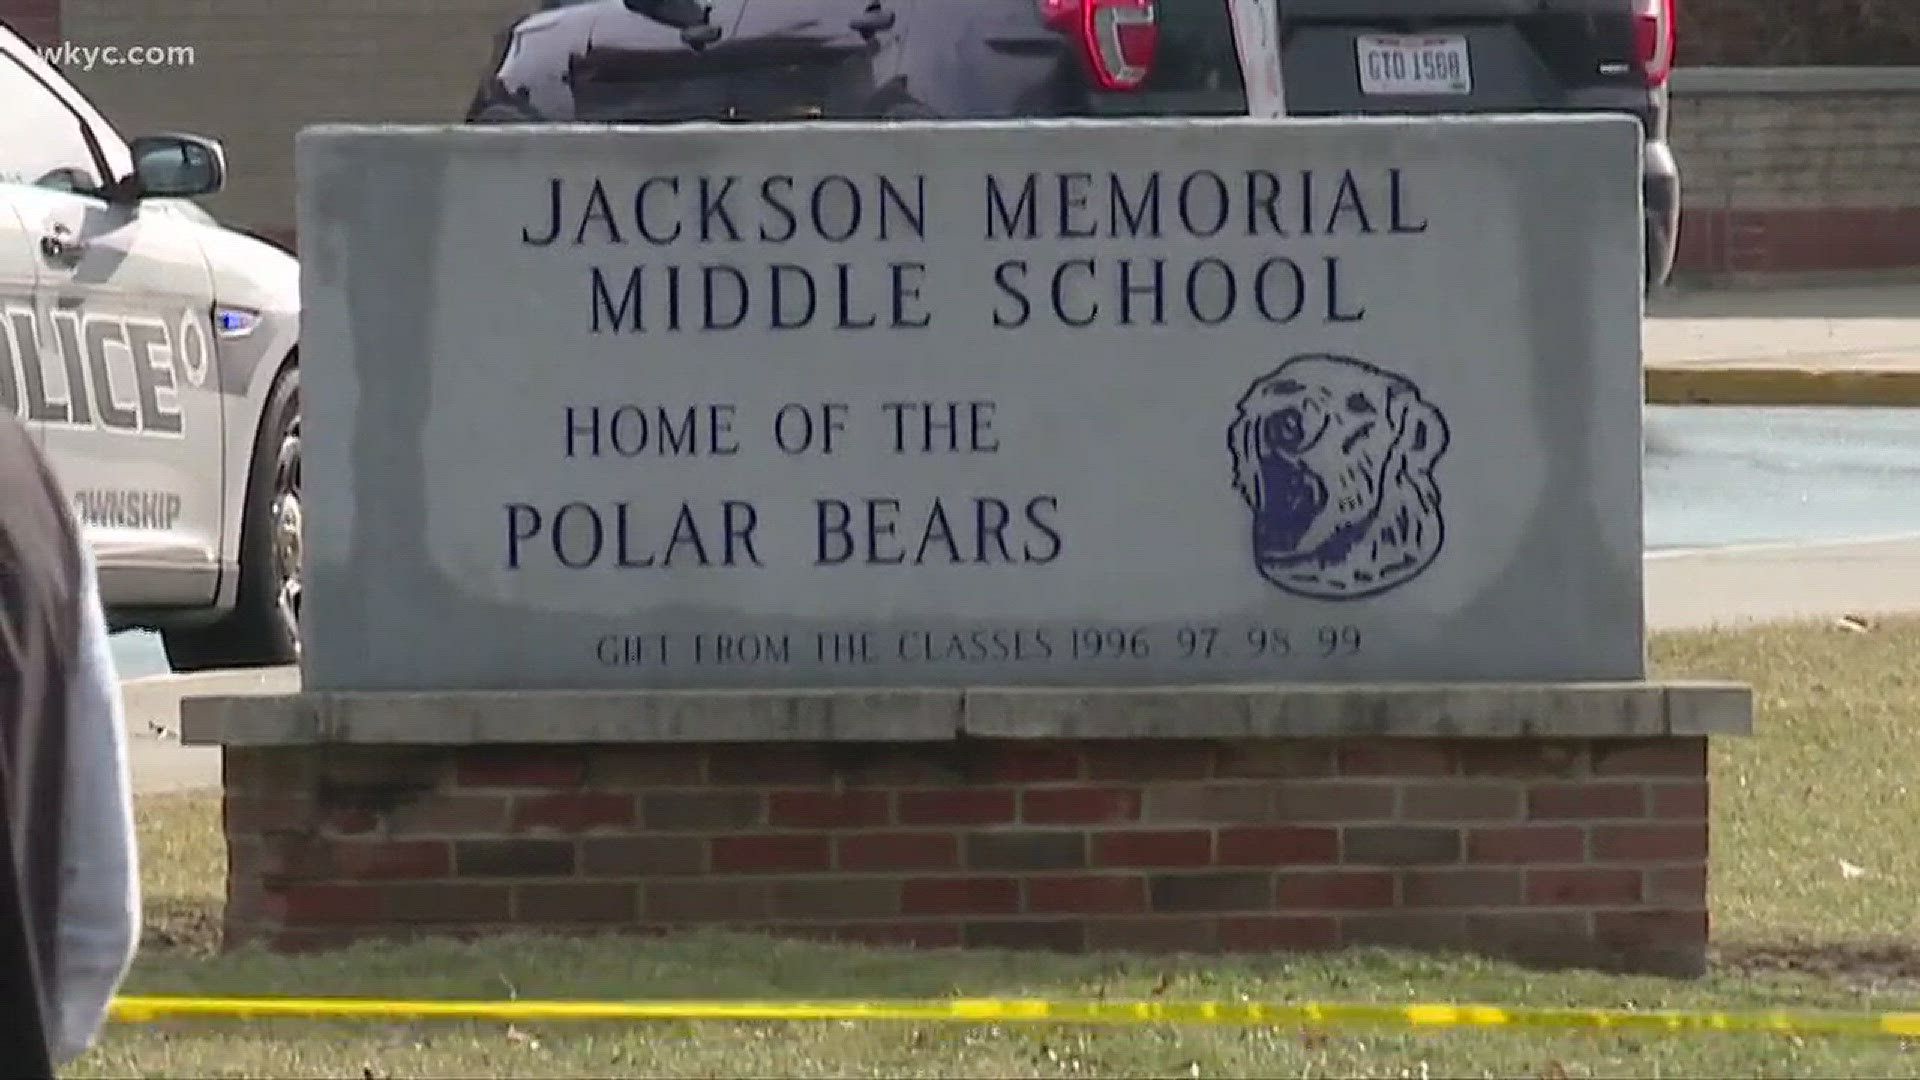 Student dies after shooting himself in Jackson Middle School bathroom